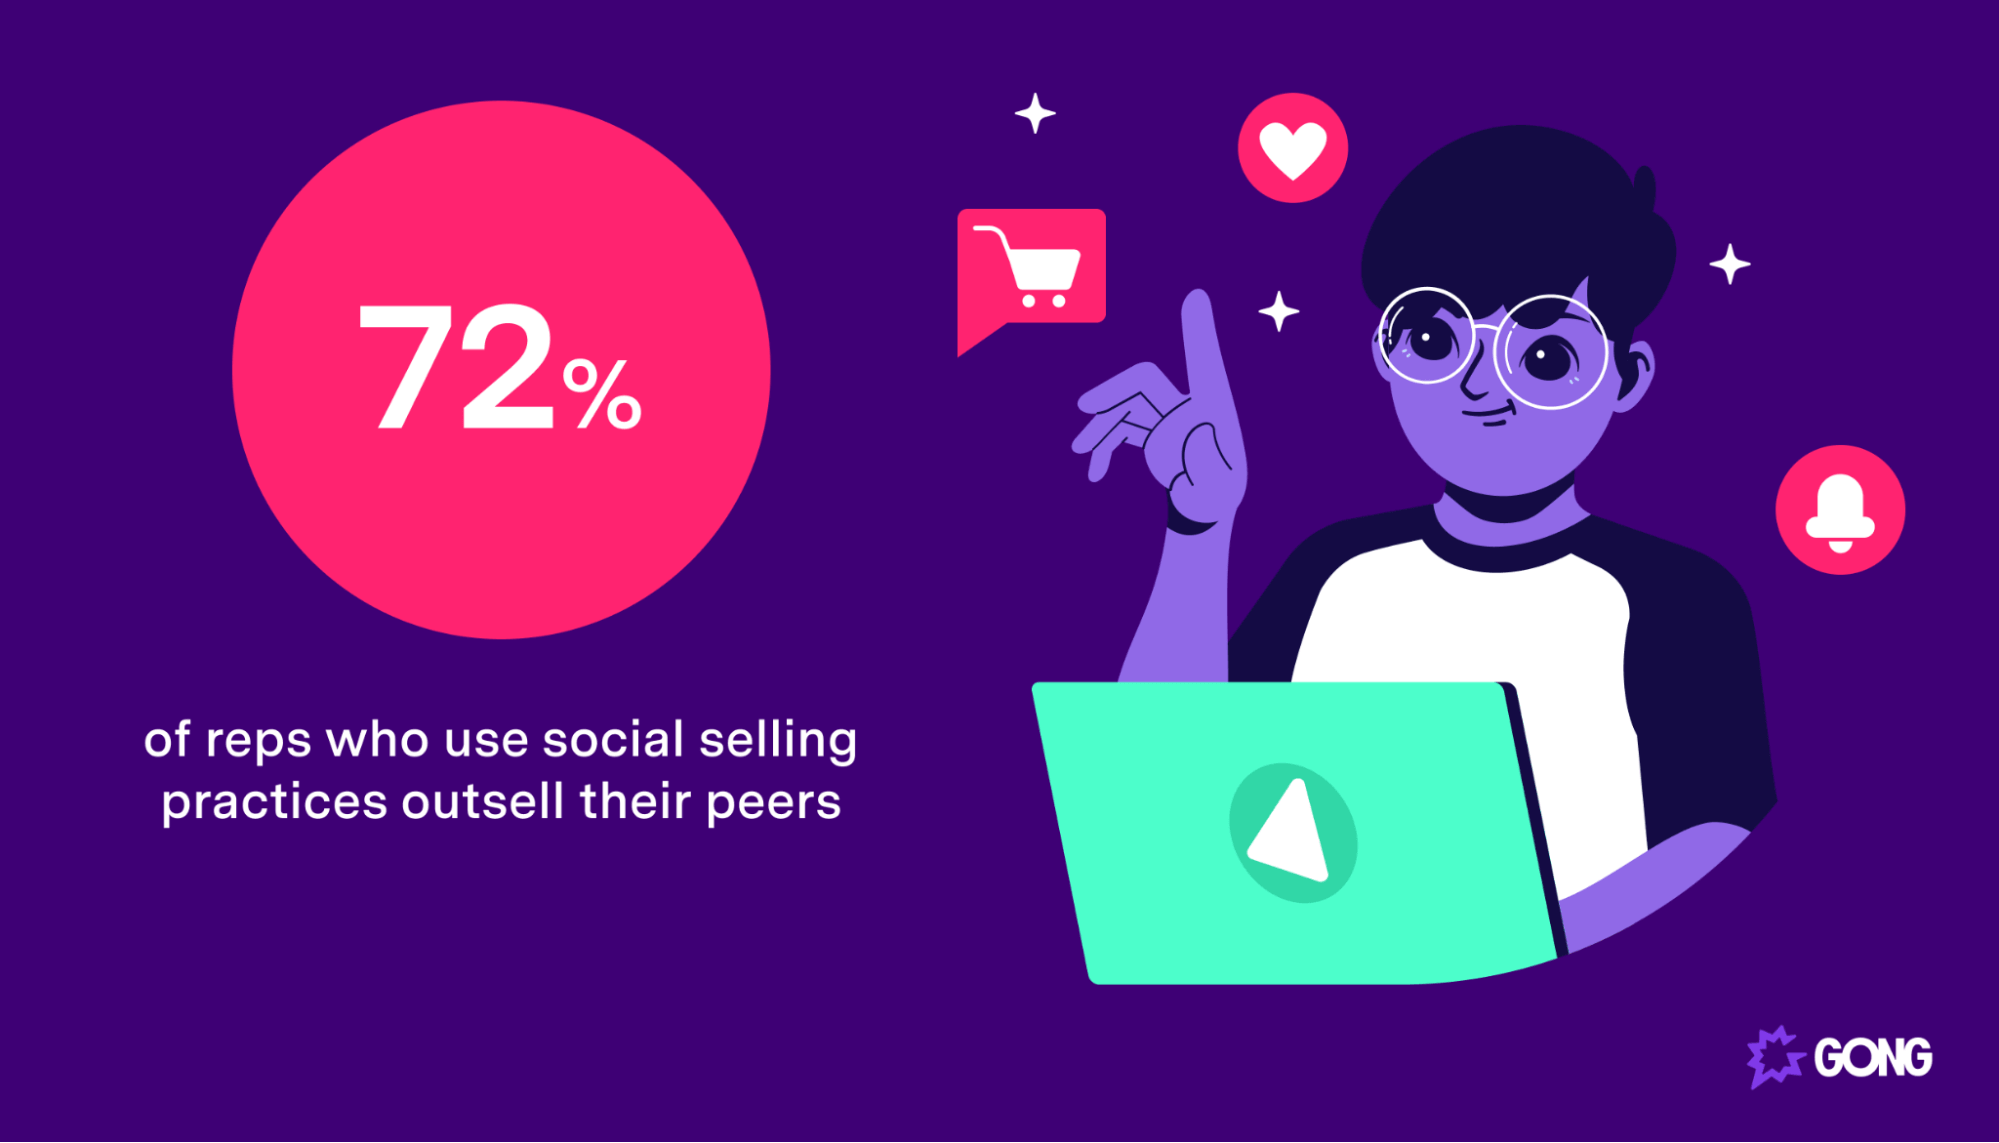 A statistic regarding social selling